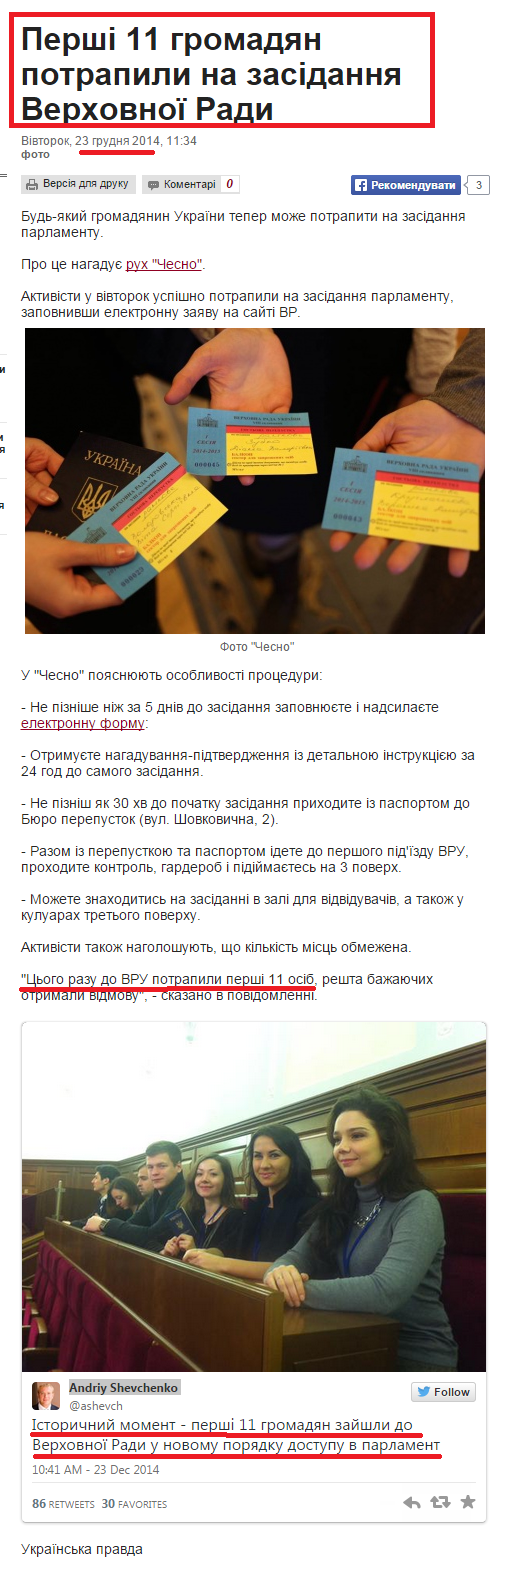 http://www.pravda.com.ua/news/2014/12/23/7052980/